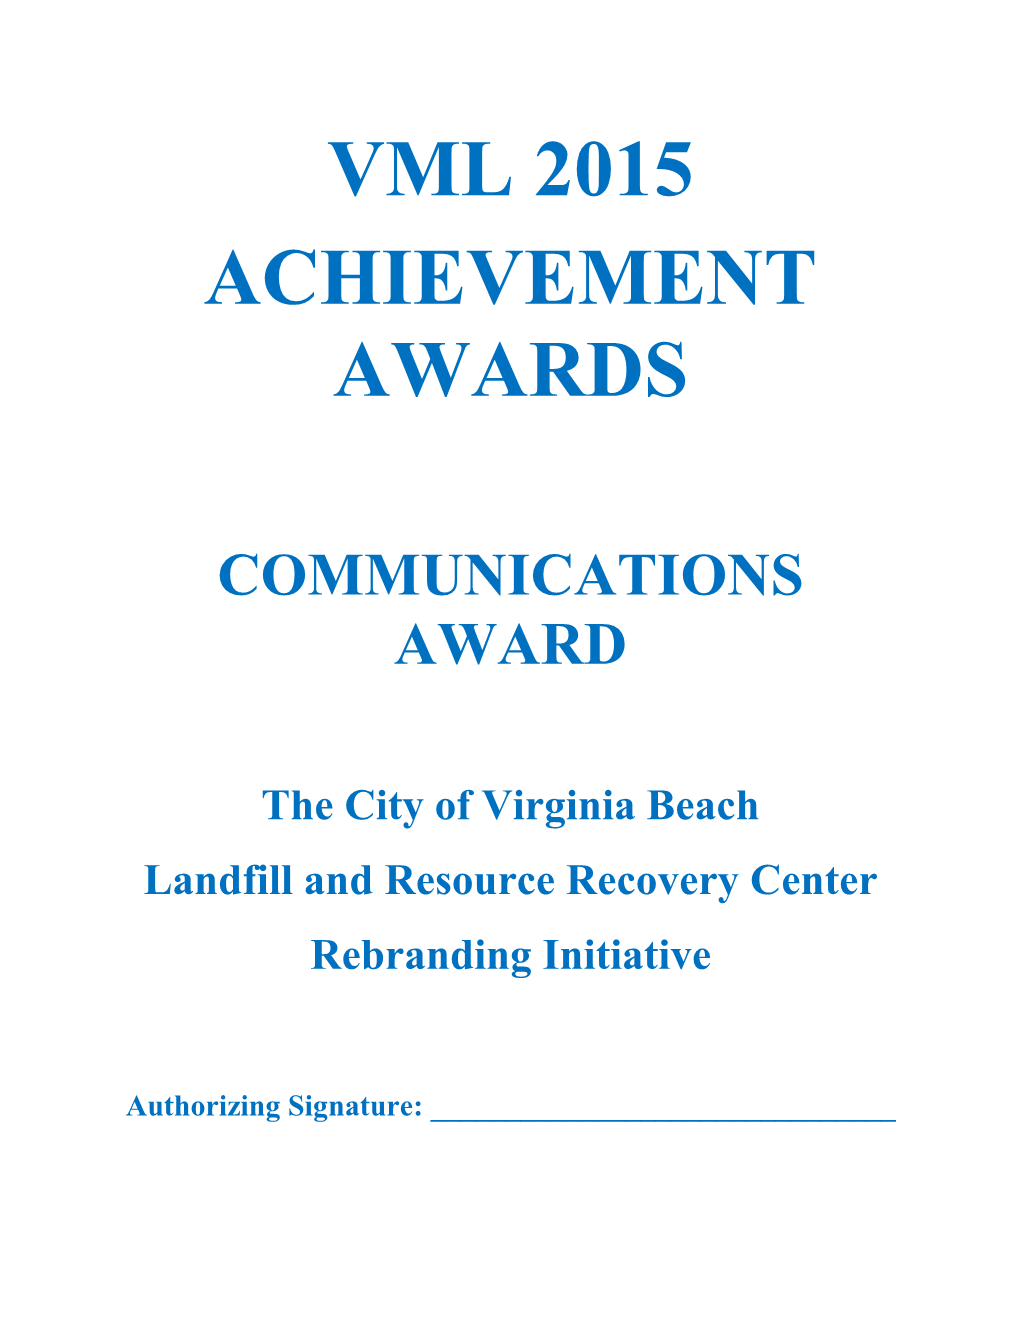 VML Communications Award